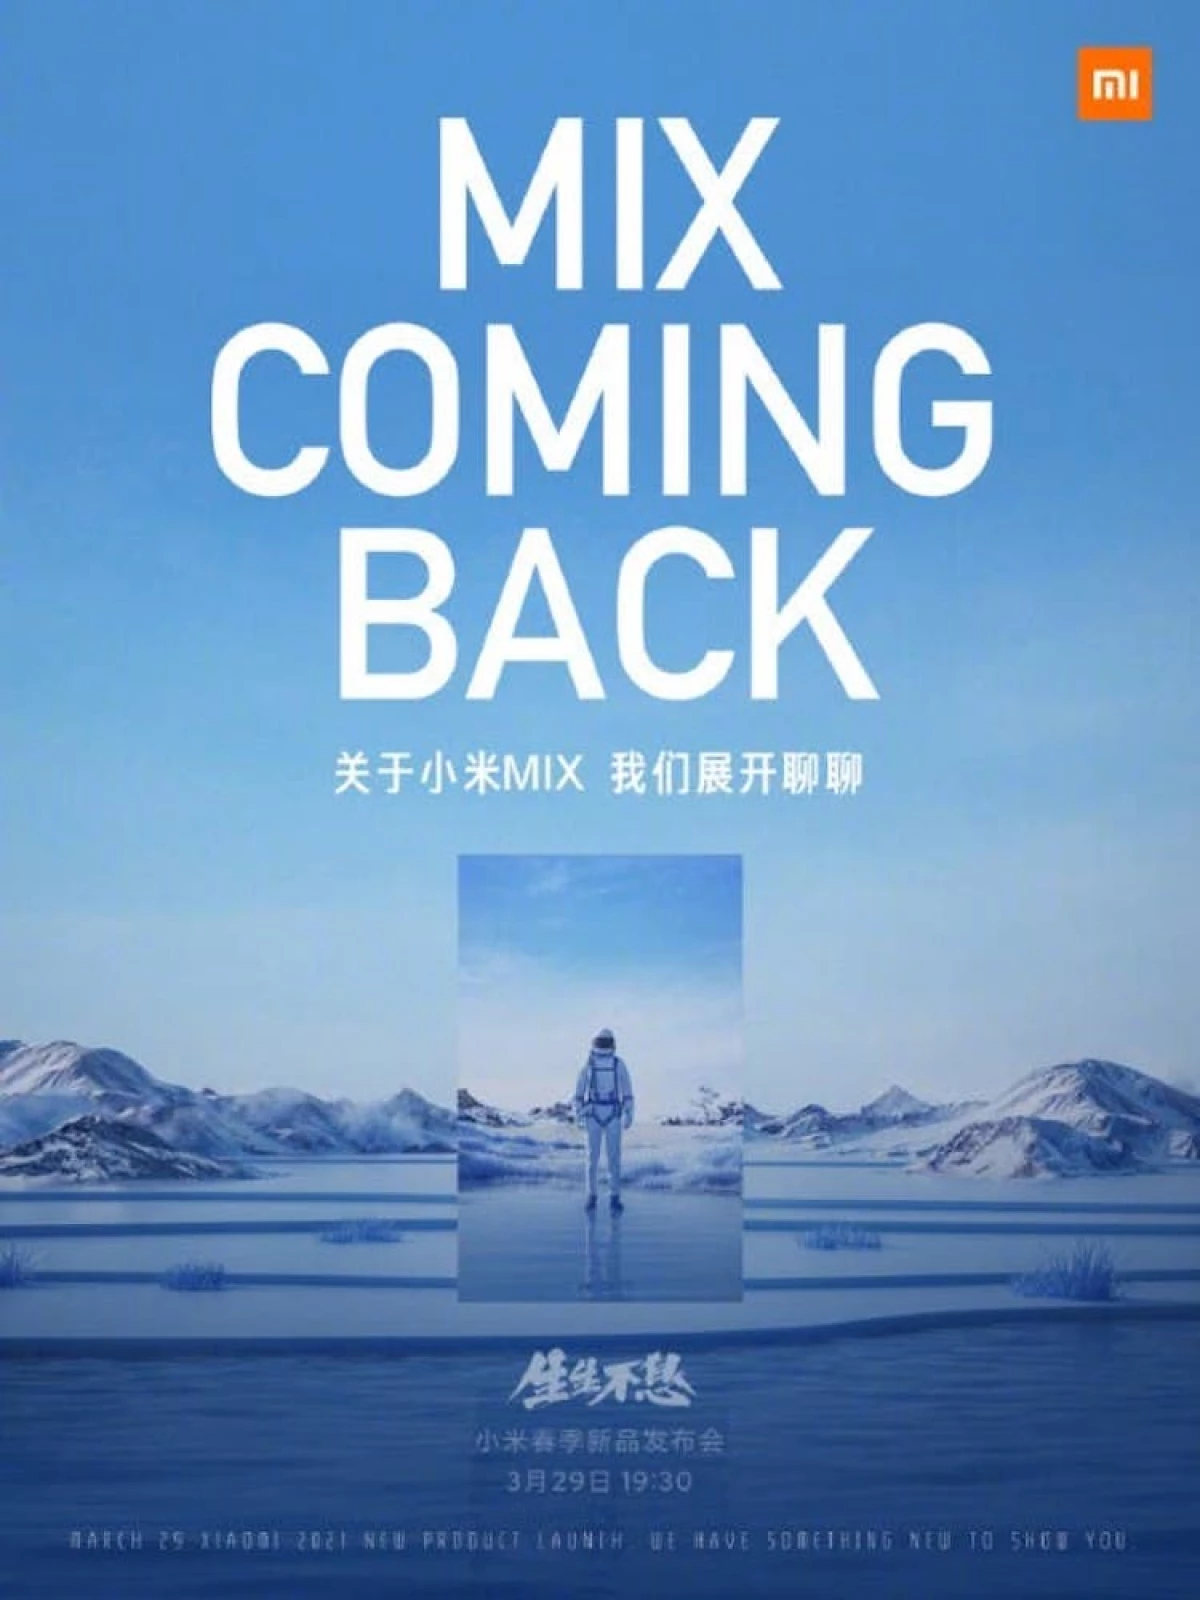 29 tháng 3, Xiaomi sẽ giới thiệu ba điện thoại thông minh hàng đầu cùng một lúc. Mi Mix trở lại! 7891_3